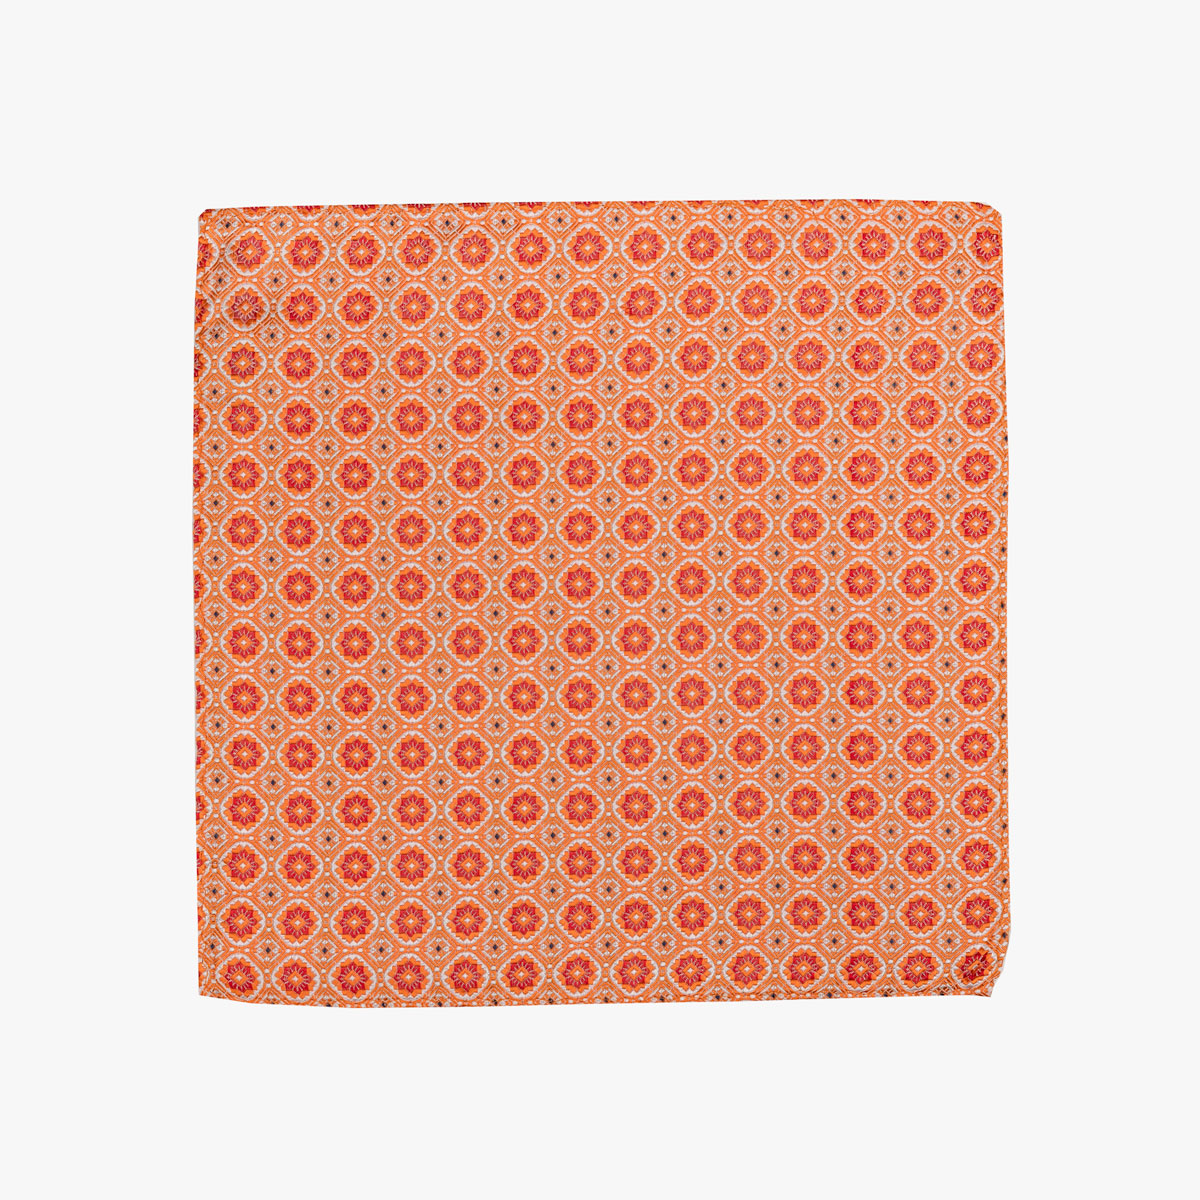 Einstecktuch aus Seide in orange mit rotem Muster